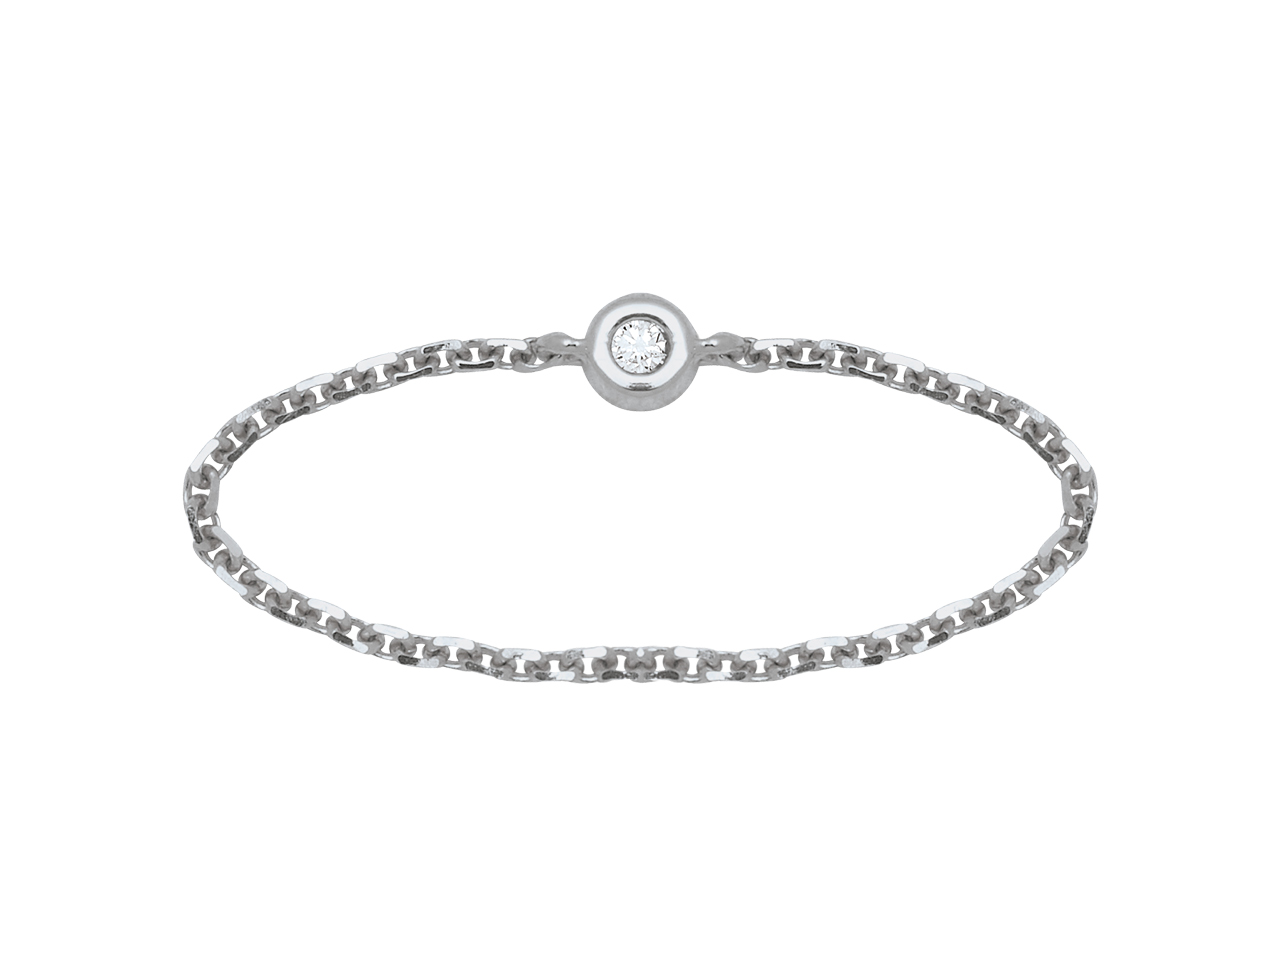 Bague Chaîne en Or Gris 18k Ornée de Diamants Étincelants – Un Symbole d’Élégance et d’Engagement